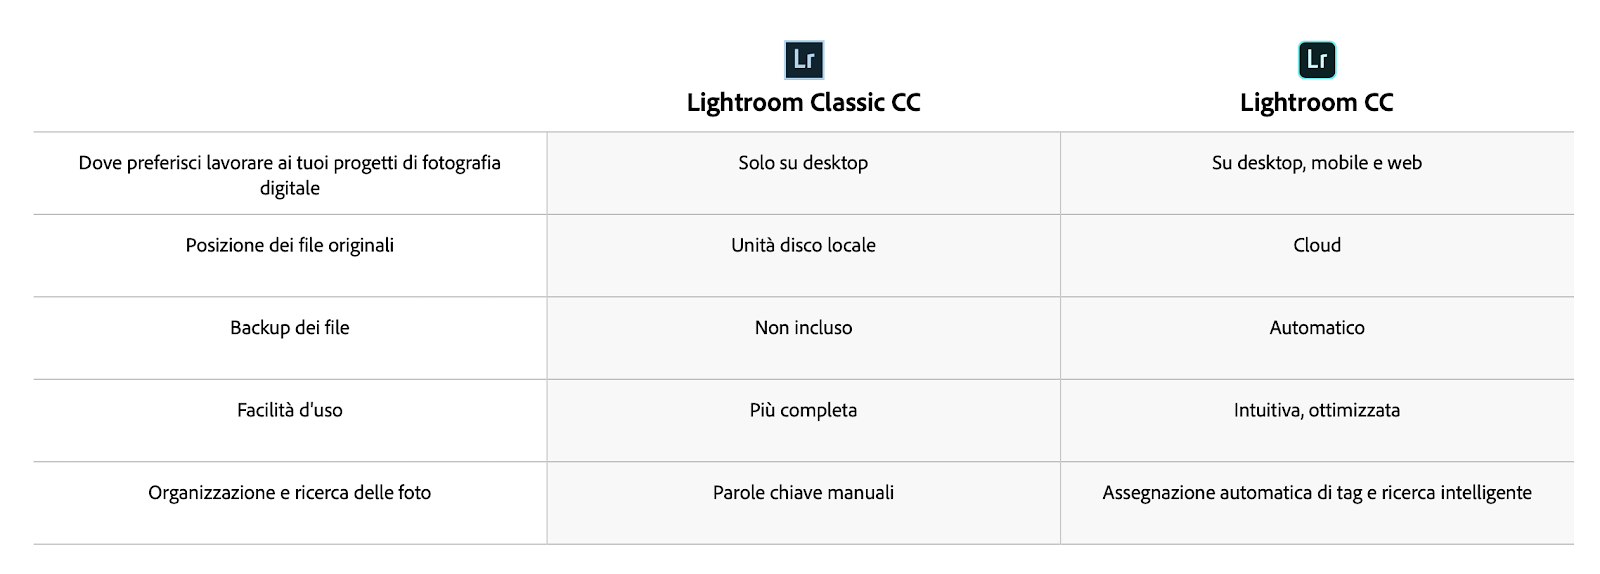 Qual è la differenza tra Lightroom Classic e Lightroom